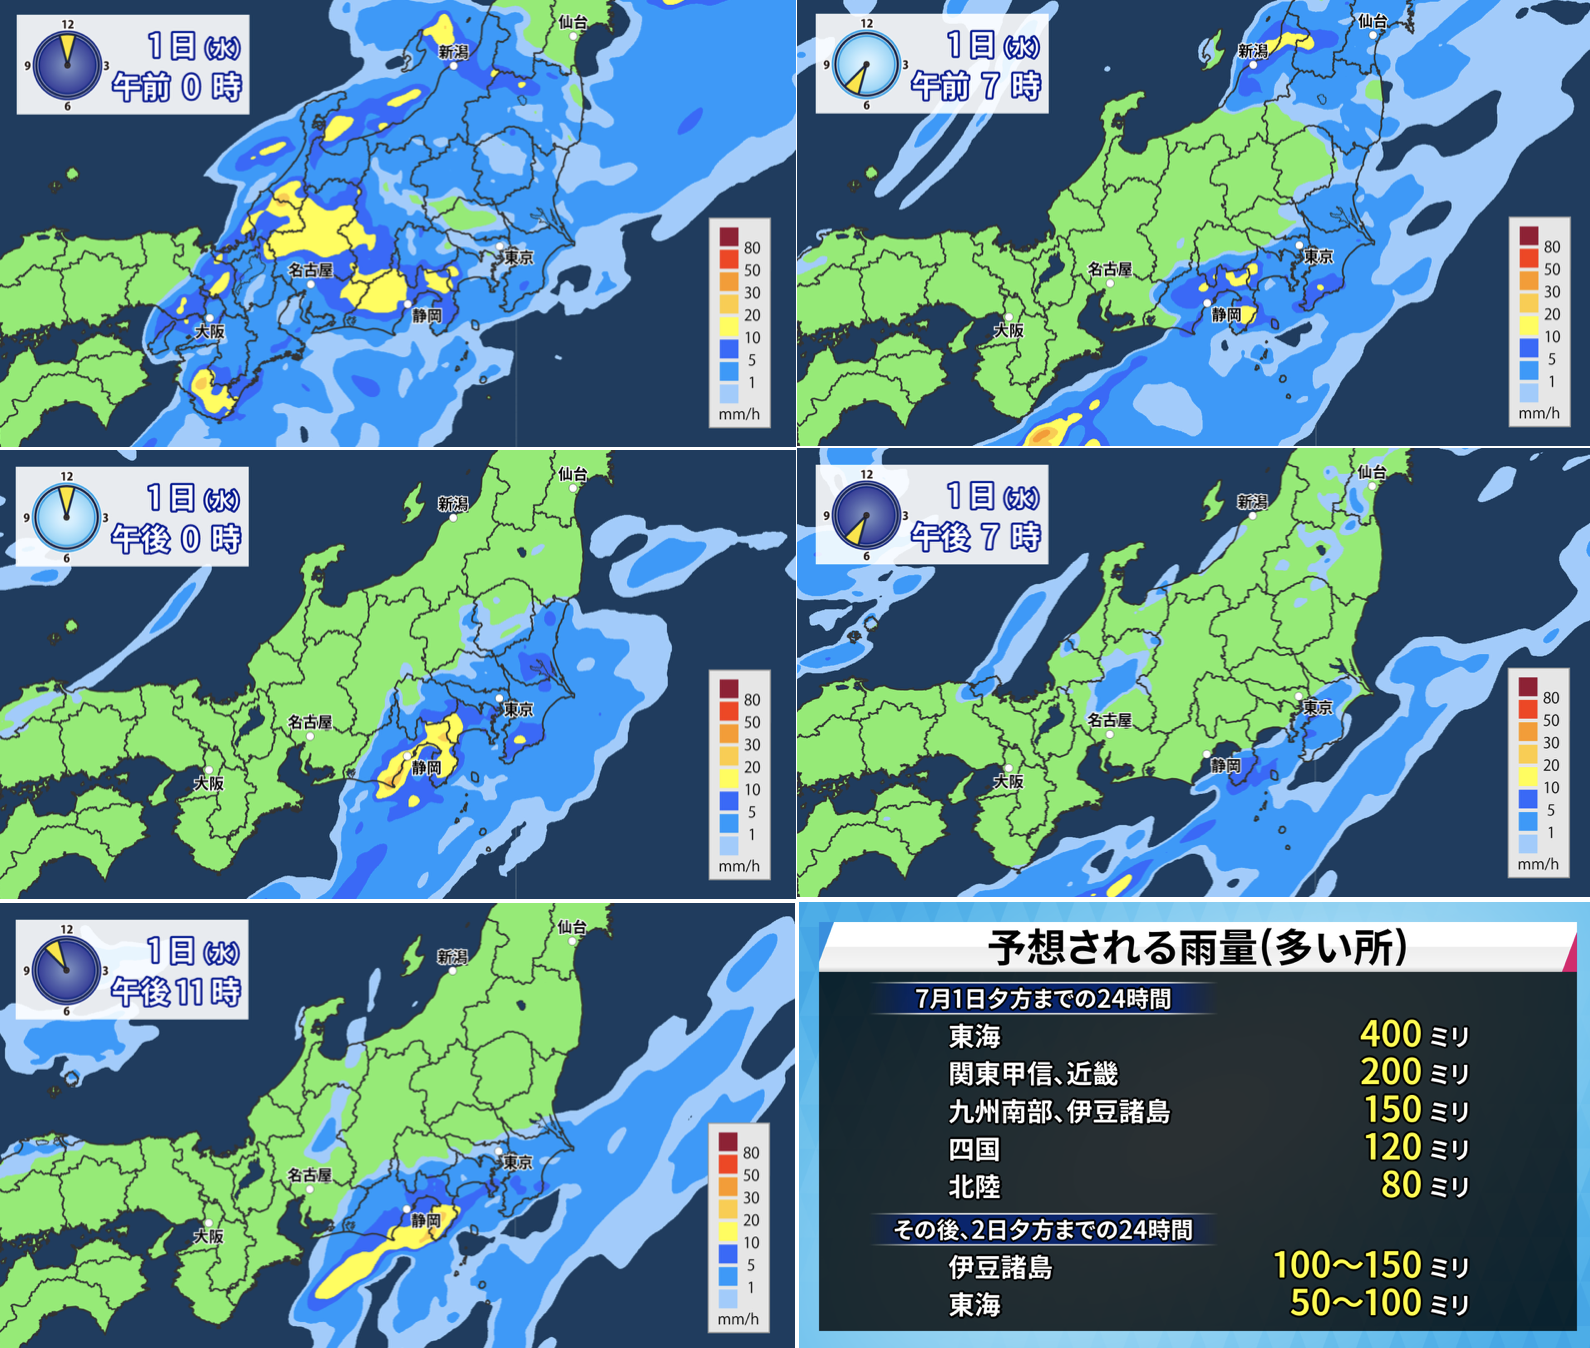 7月1日 水 関東 東海中心に大雨 静岡県は記録的な雨量のおそれ 小林正寿official Site